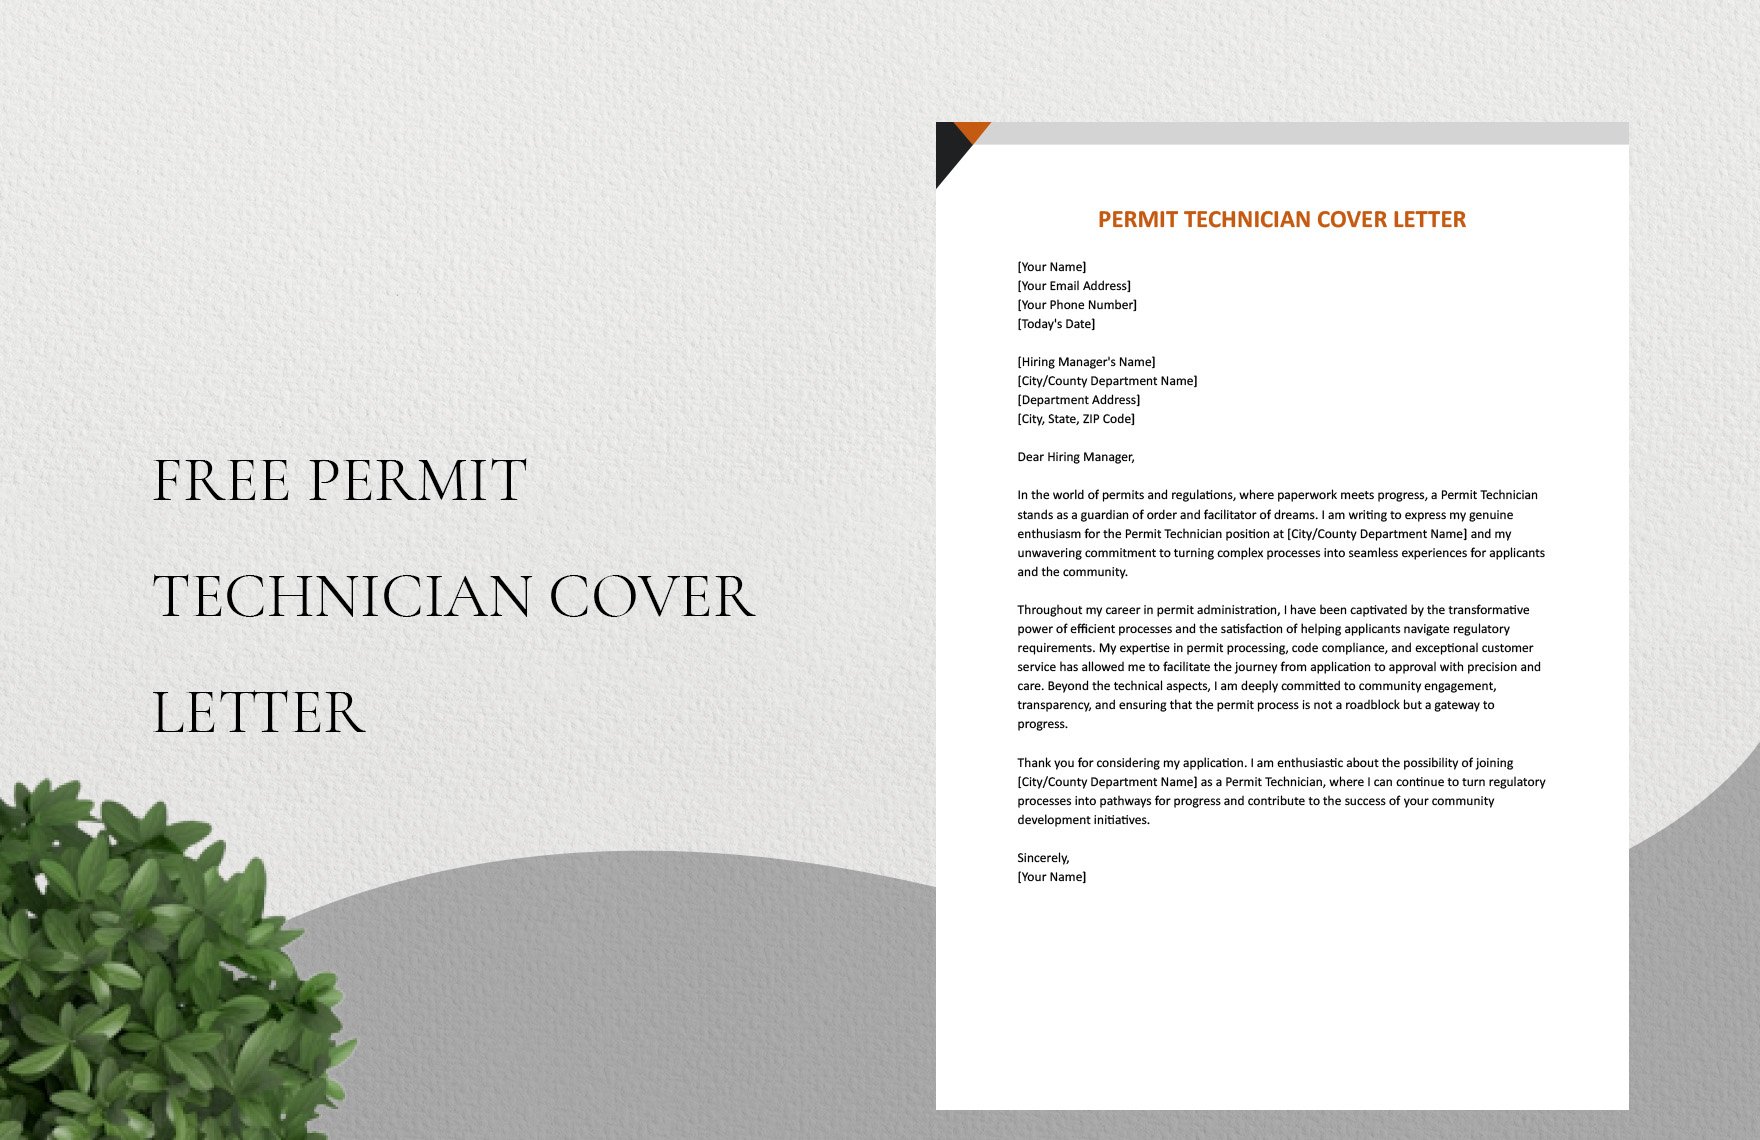 Permit Technician Cover Letter